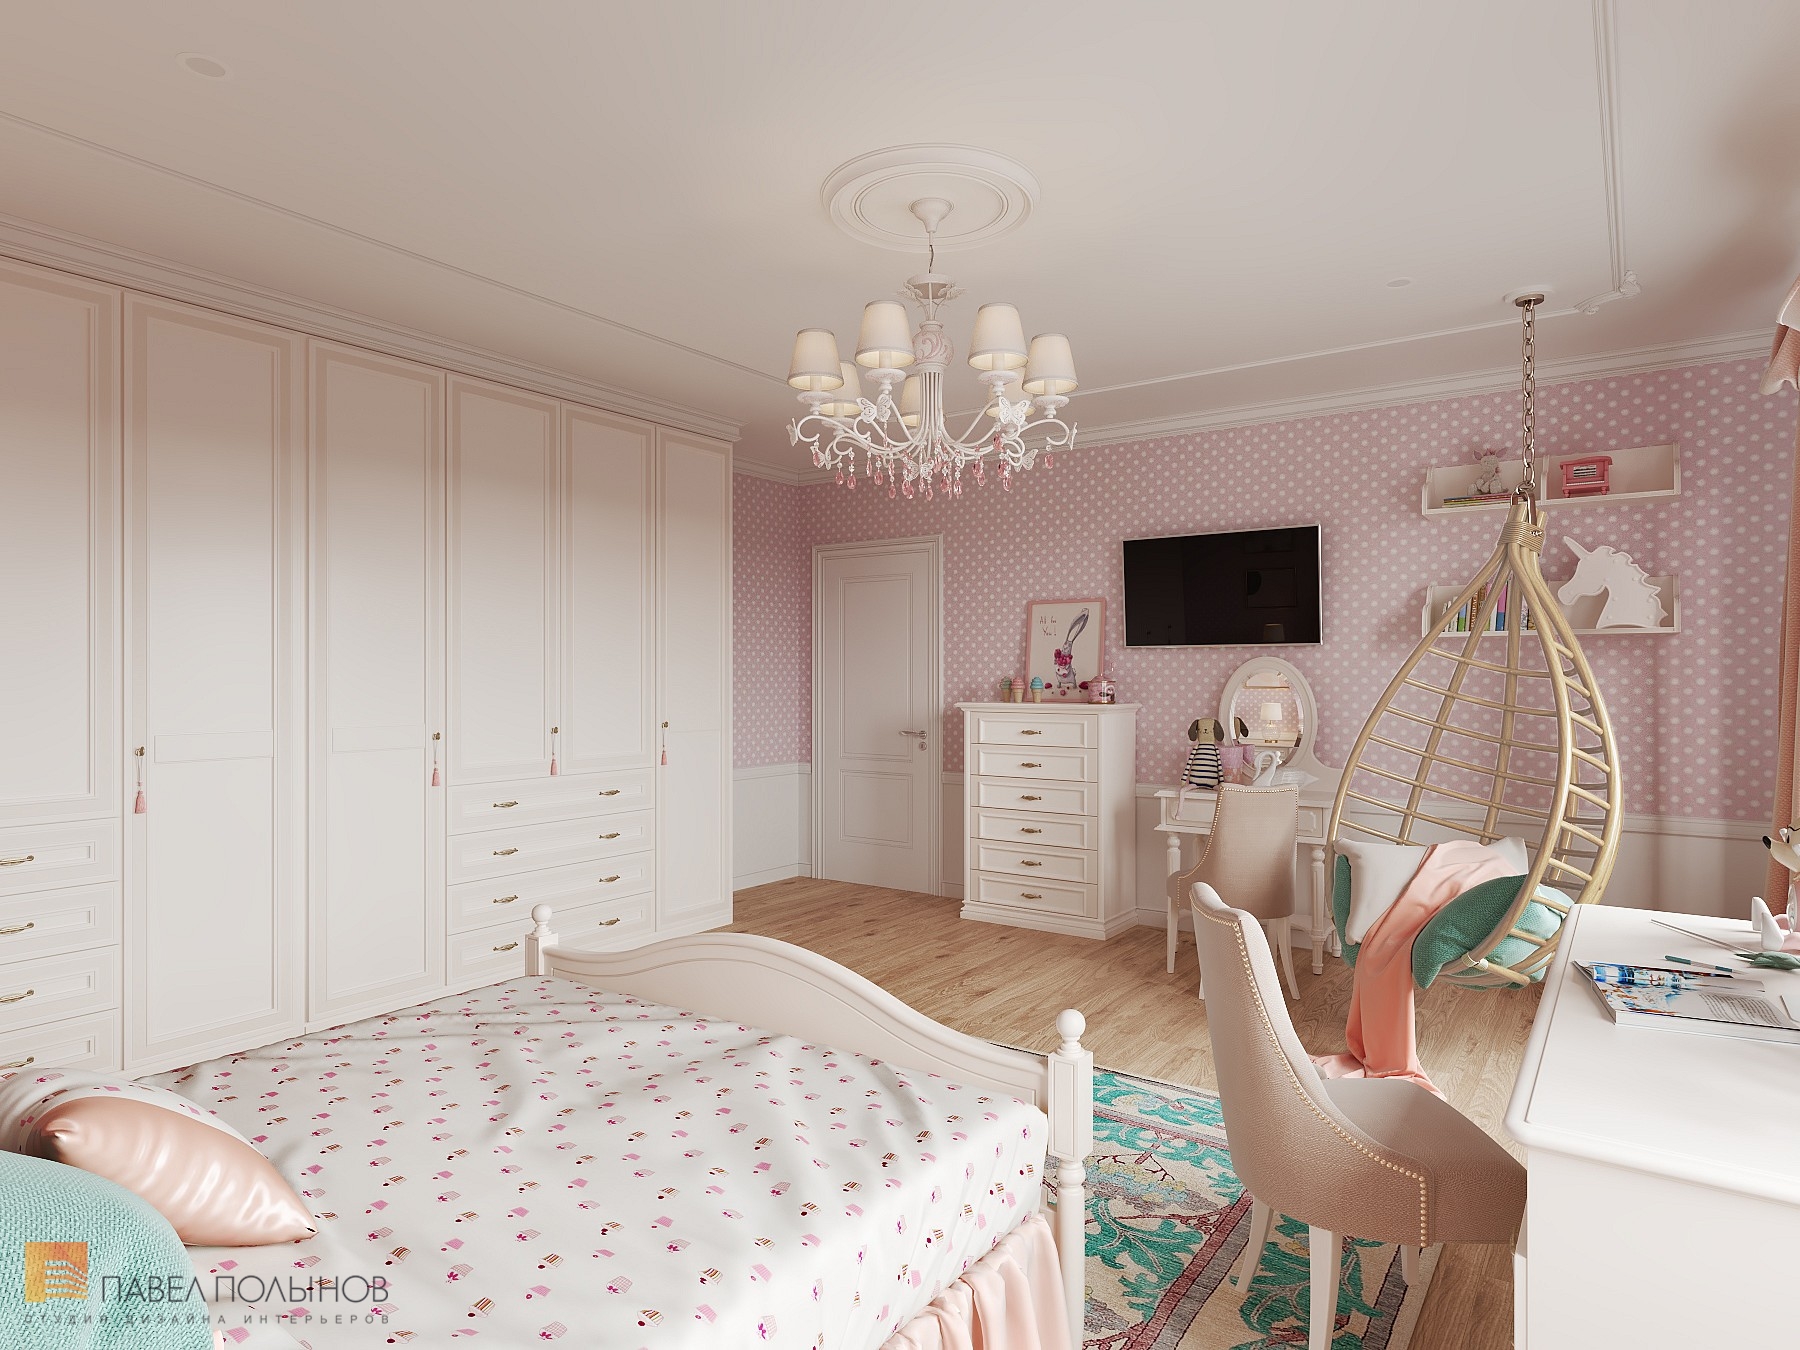 Фото детская комната из проекта «Интерьер квартиры 140 кв.м. в стиле неоклассики»